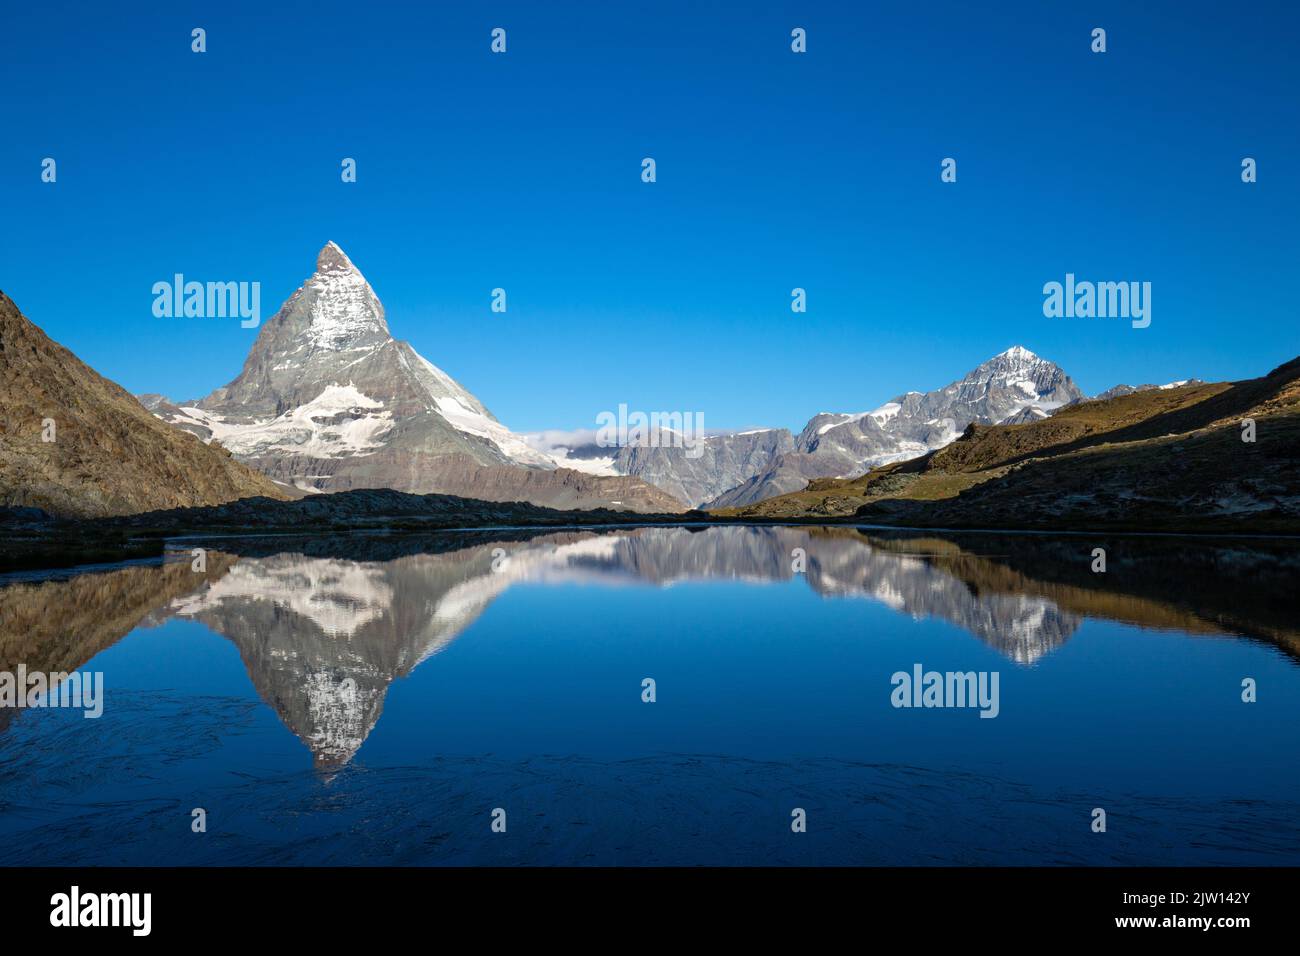 Das majestätische Matterhorn, der berühmteste Berg der Schweiz, spiegelt sich am frühen Morgen im Riffelsee in einer überwältigenden Landschaft wider. Stockfoto